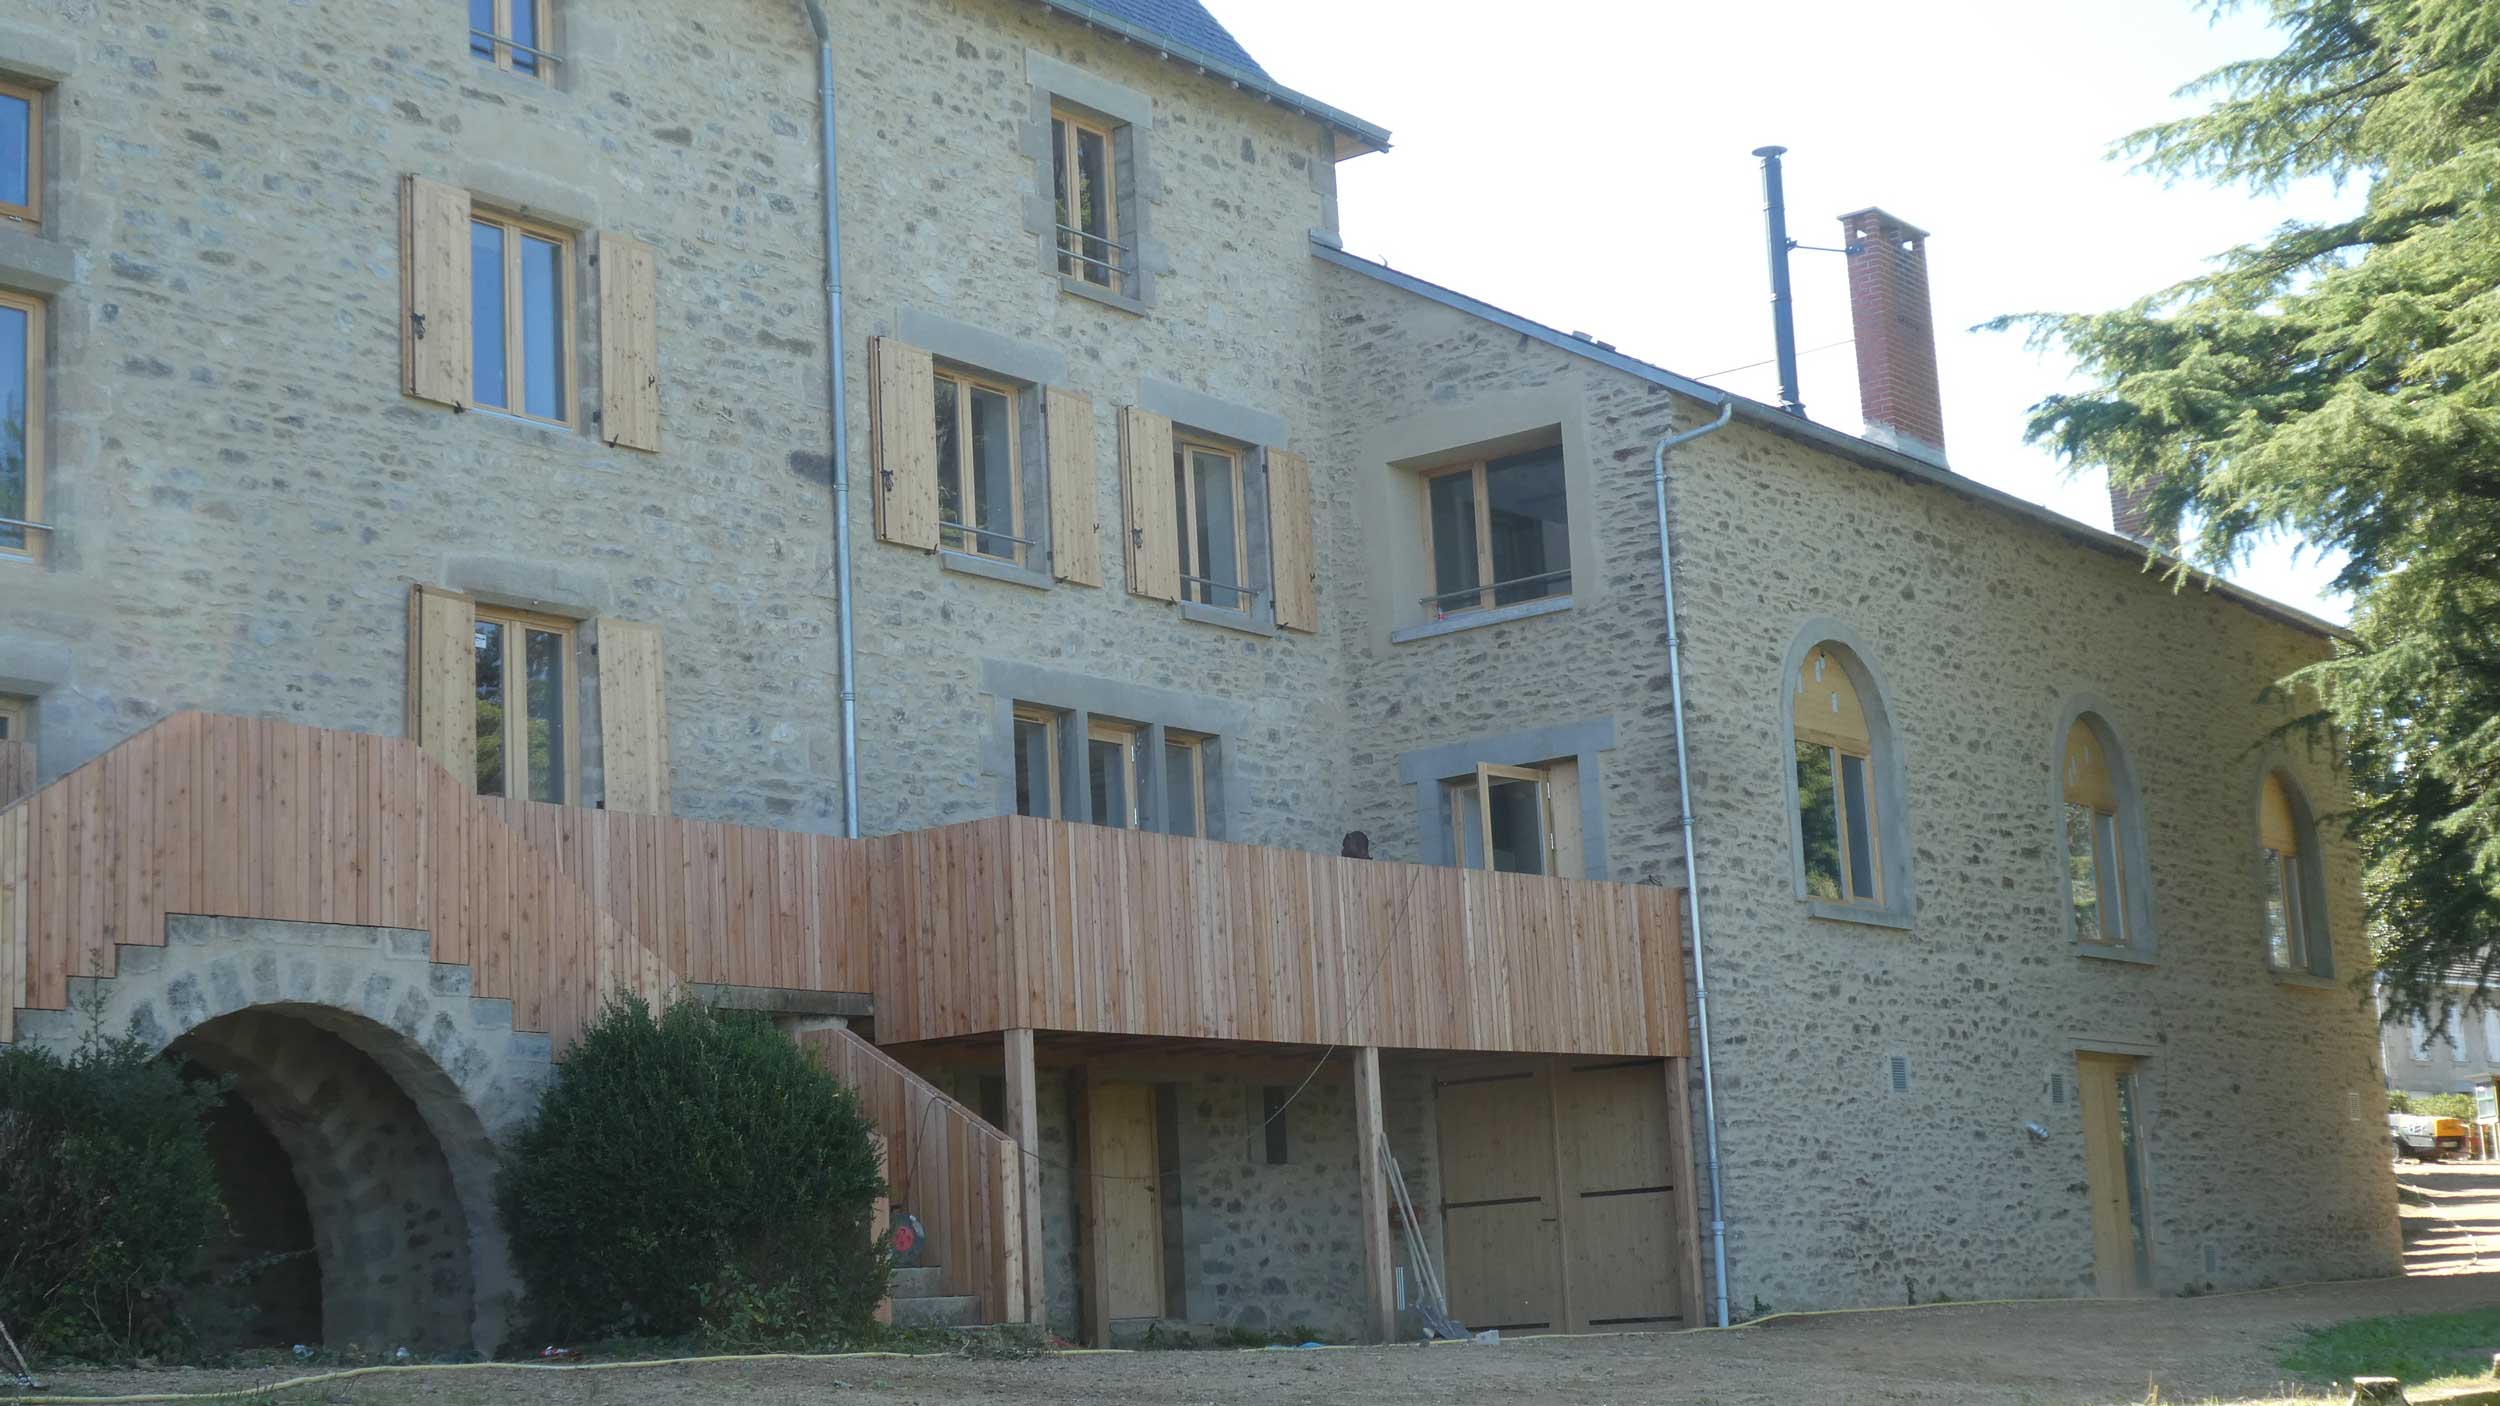 Restauration du patrimoine avec fenêtre en bois sur mesure